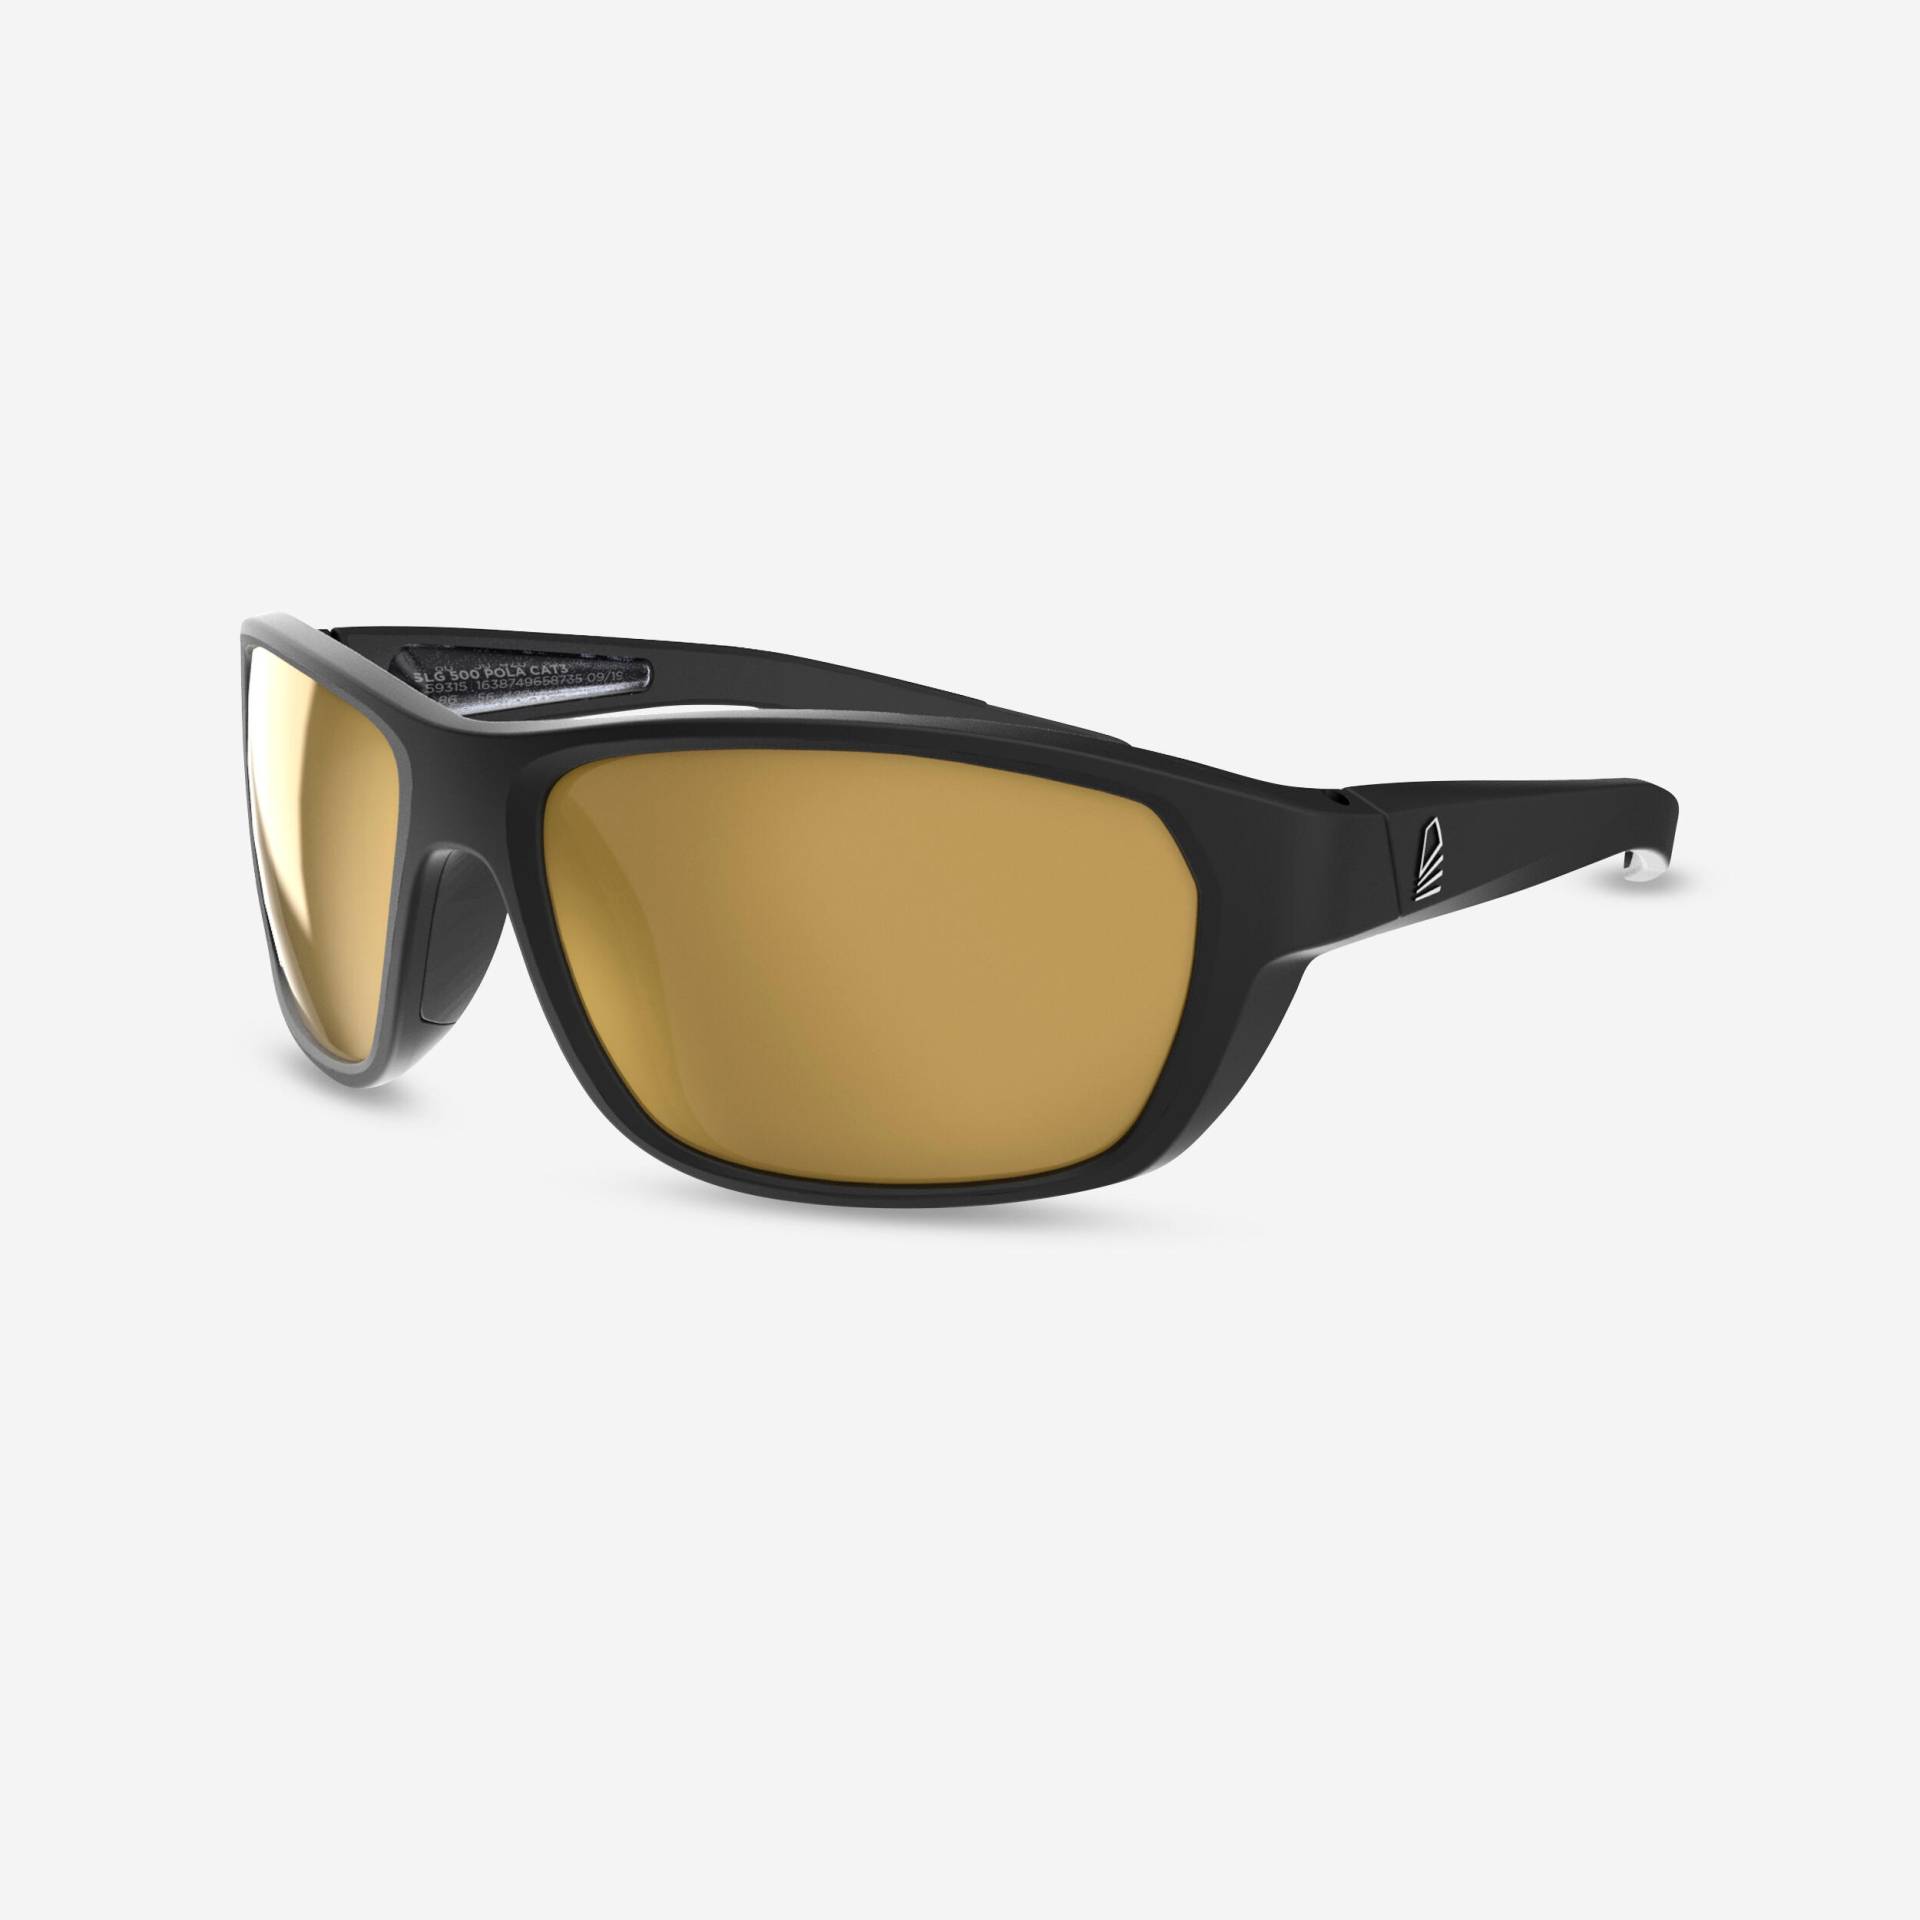 Sonnenbrille Segeln Damen/Herren S polarisierend schwimmfähig - 500 schwarz/gold von TRIBORD